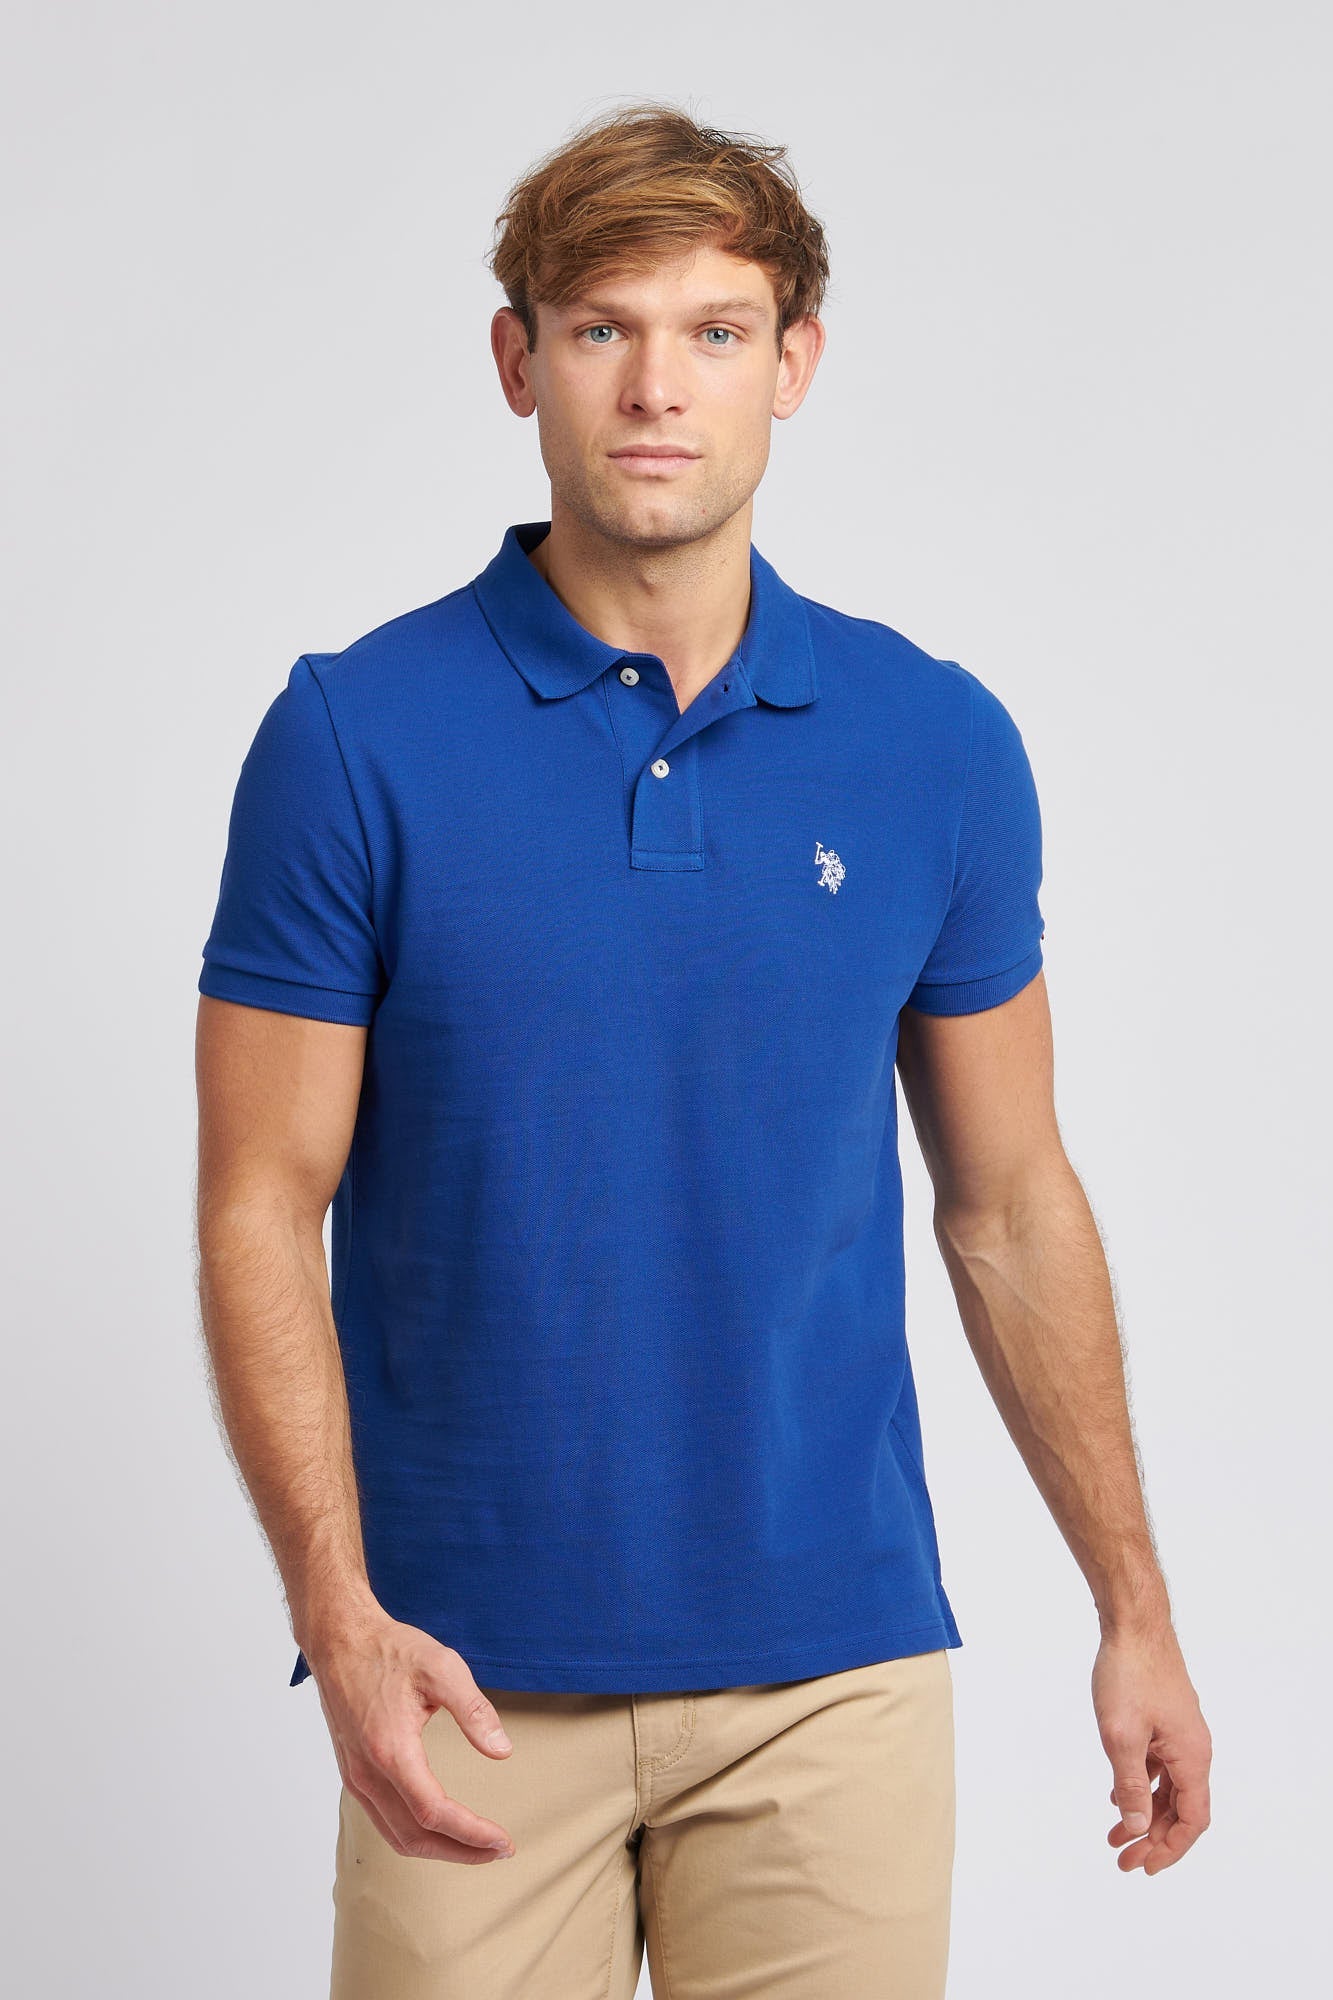 U.S. Polo Assn. Mens Pique Polo Shirt in Sodalite Blue